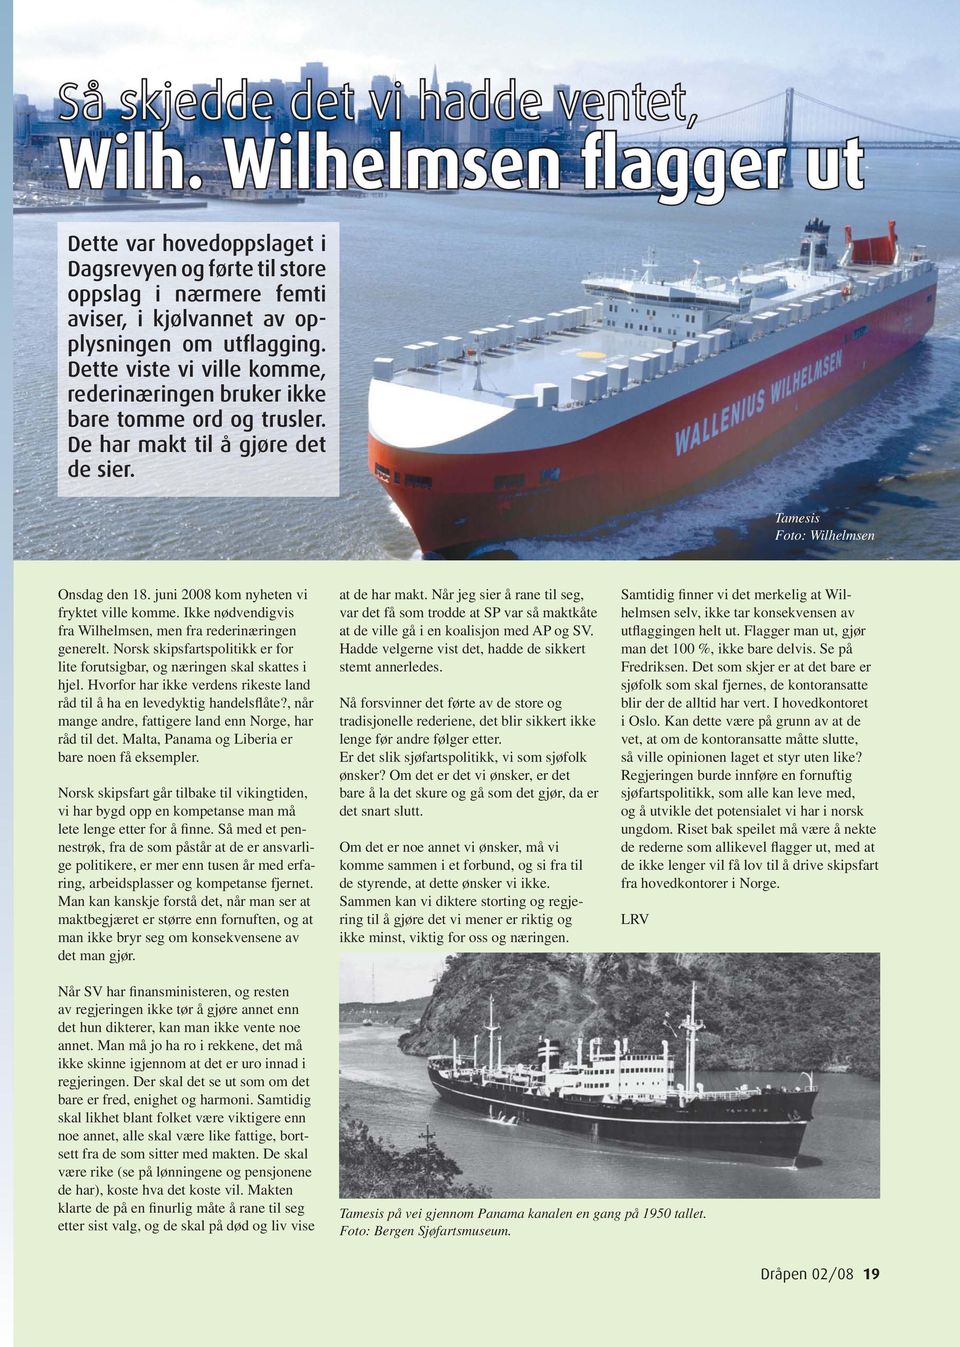 juni 2008 kom nyheten vi fryktet ville komme. Ikke nødvendigvis fra Wilhelmsen, men fra rederinæringen generelt. Norsk skipsfartspolitikk er for lite forutsigbar, og næringen skal skattes i hjel.